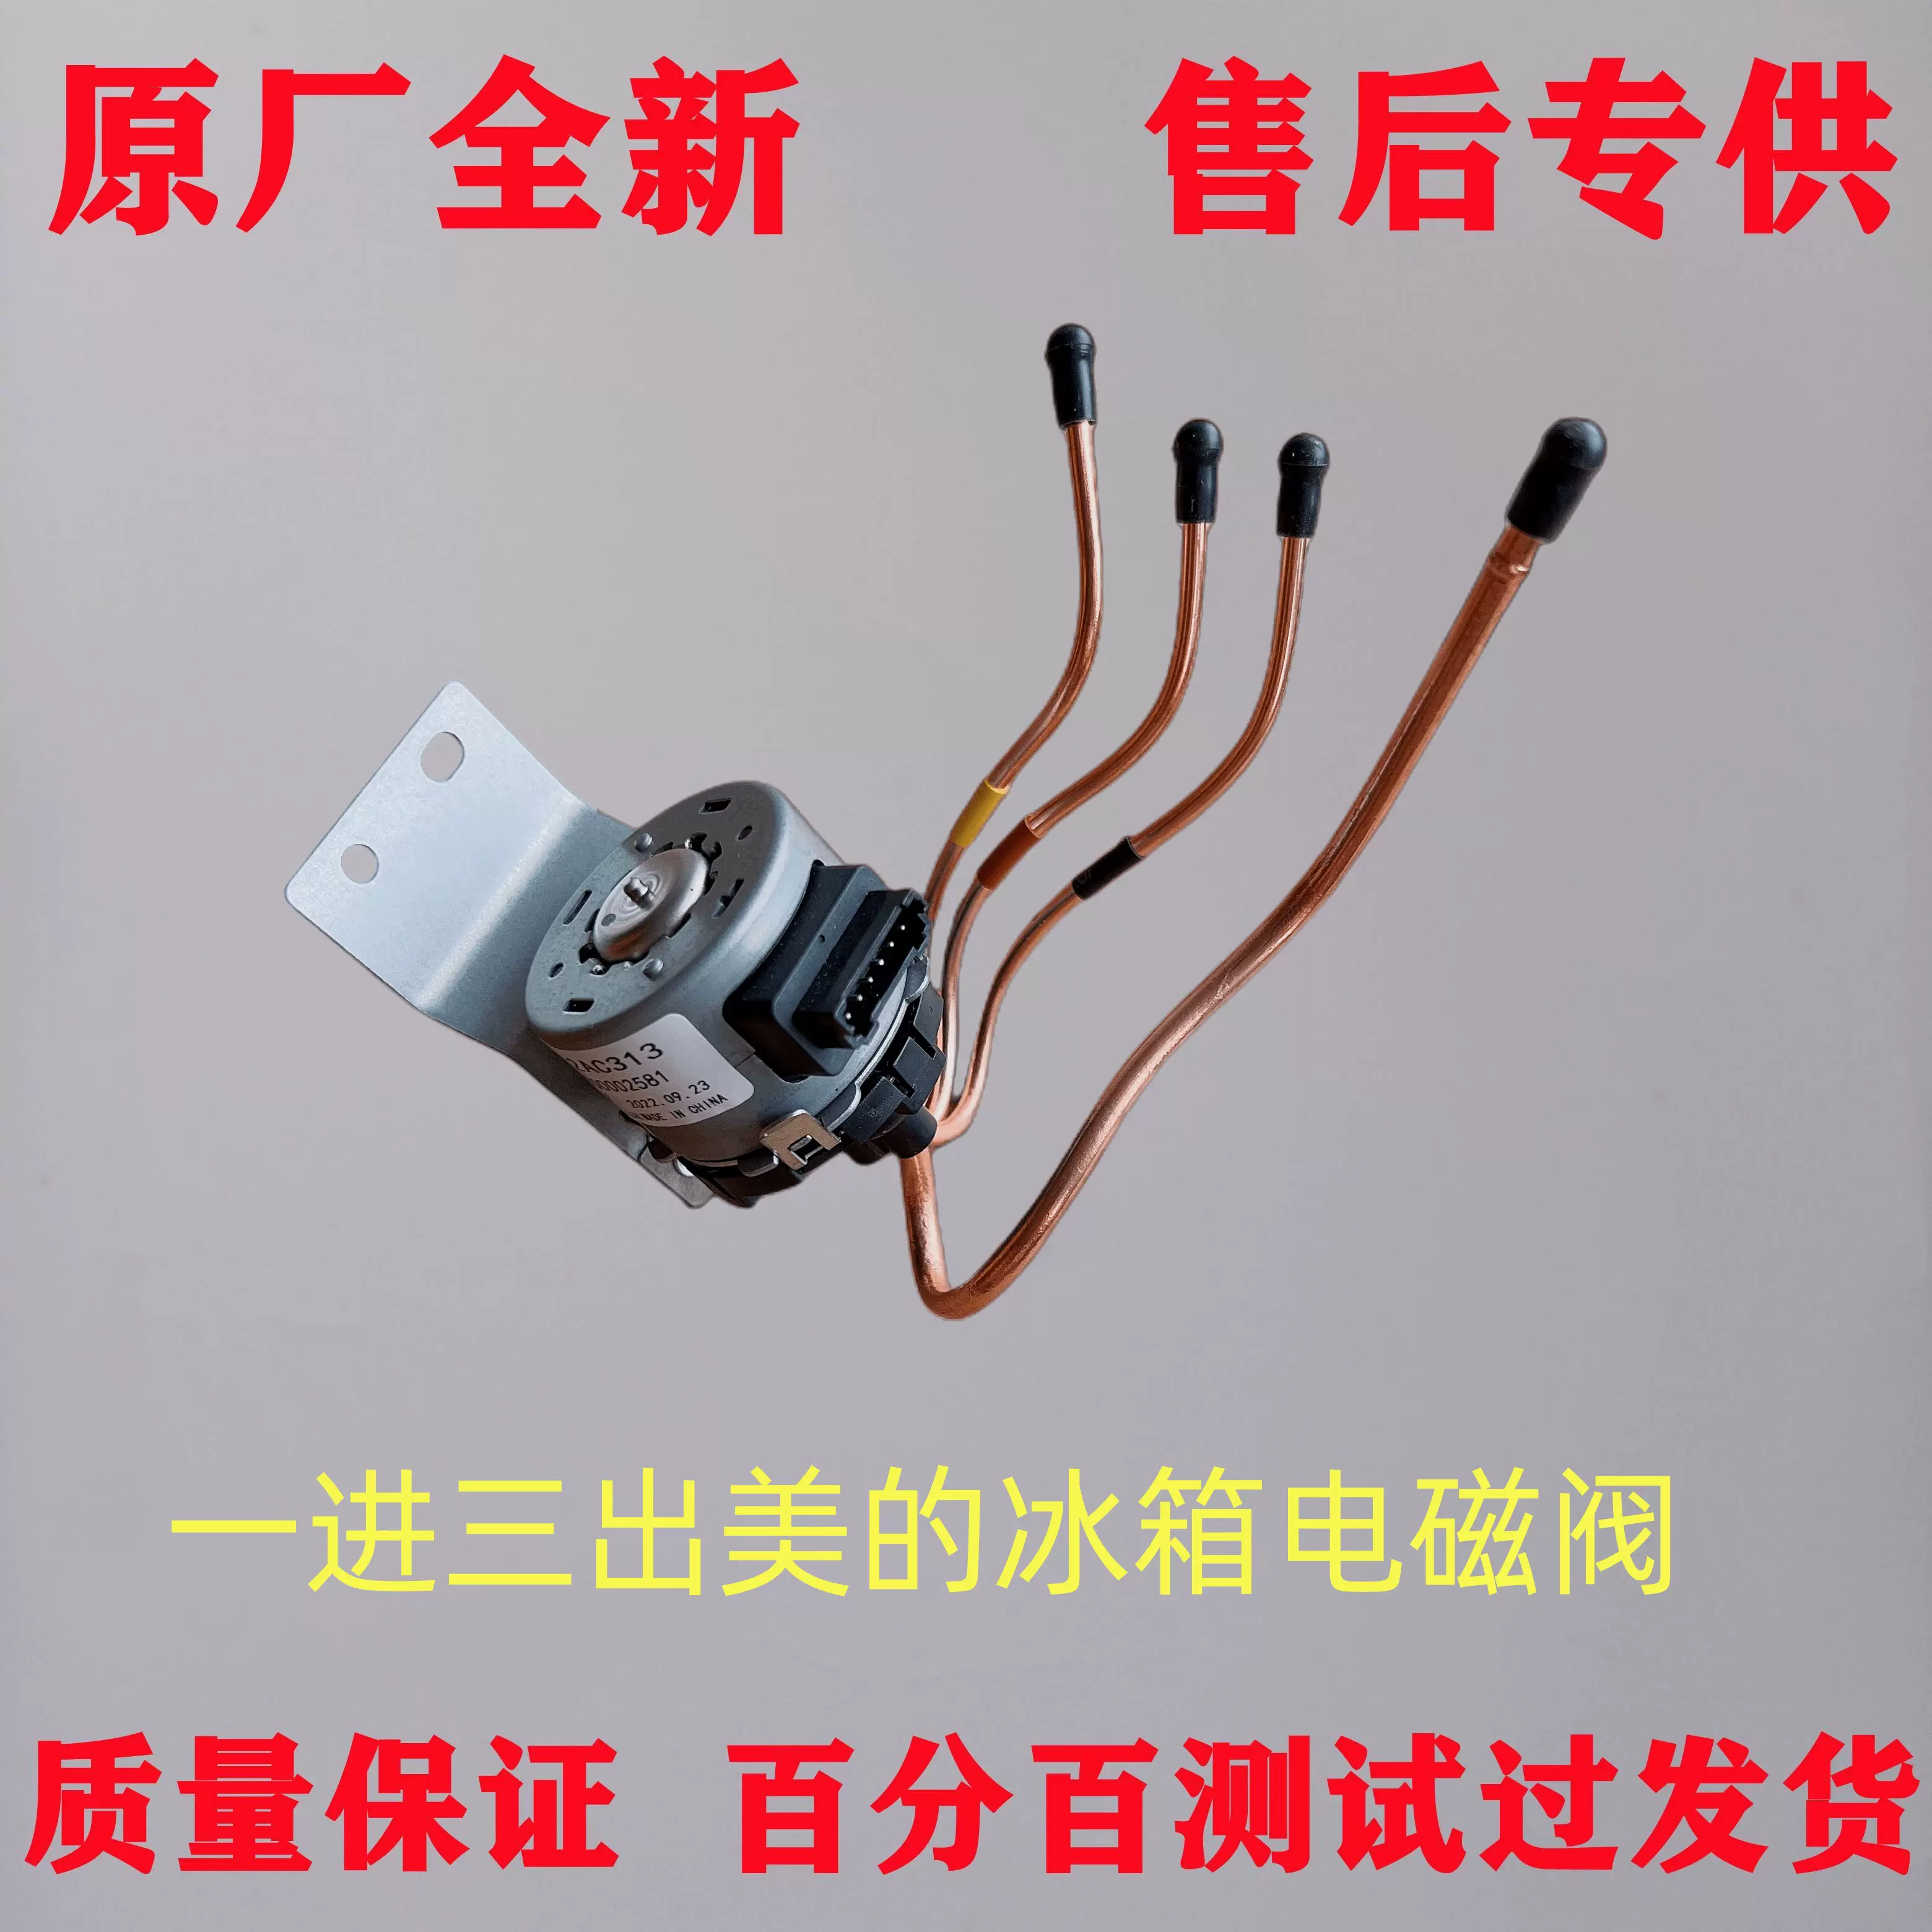 美的冰箱BCD-228 283 253 276 UTM UTGM 电磁电动切换阀1662-Taobao 